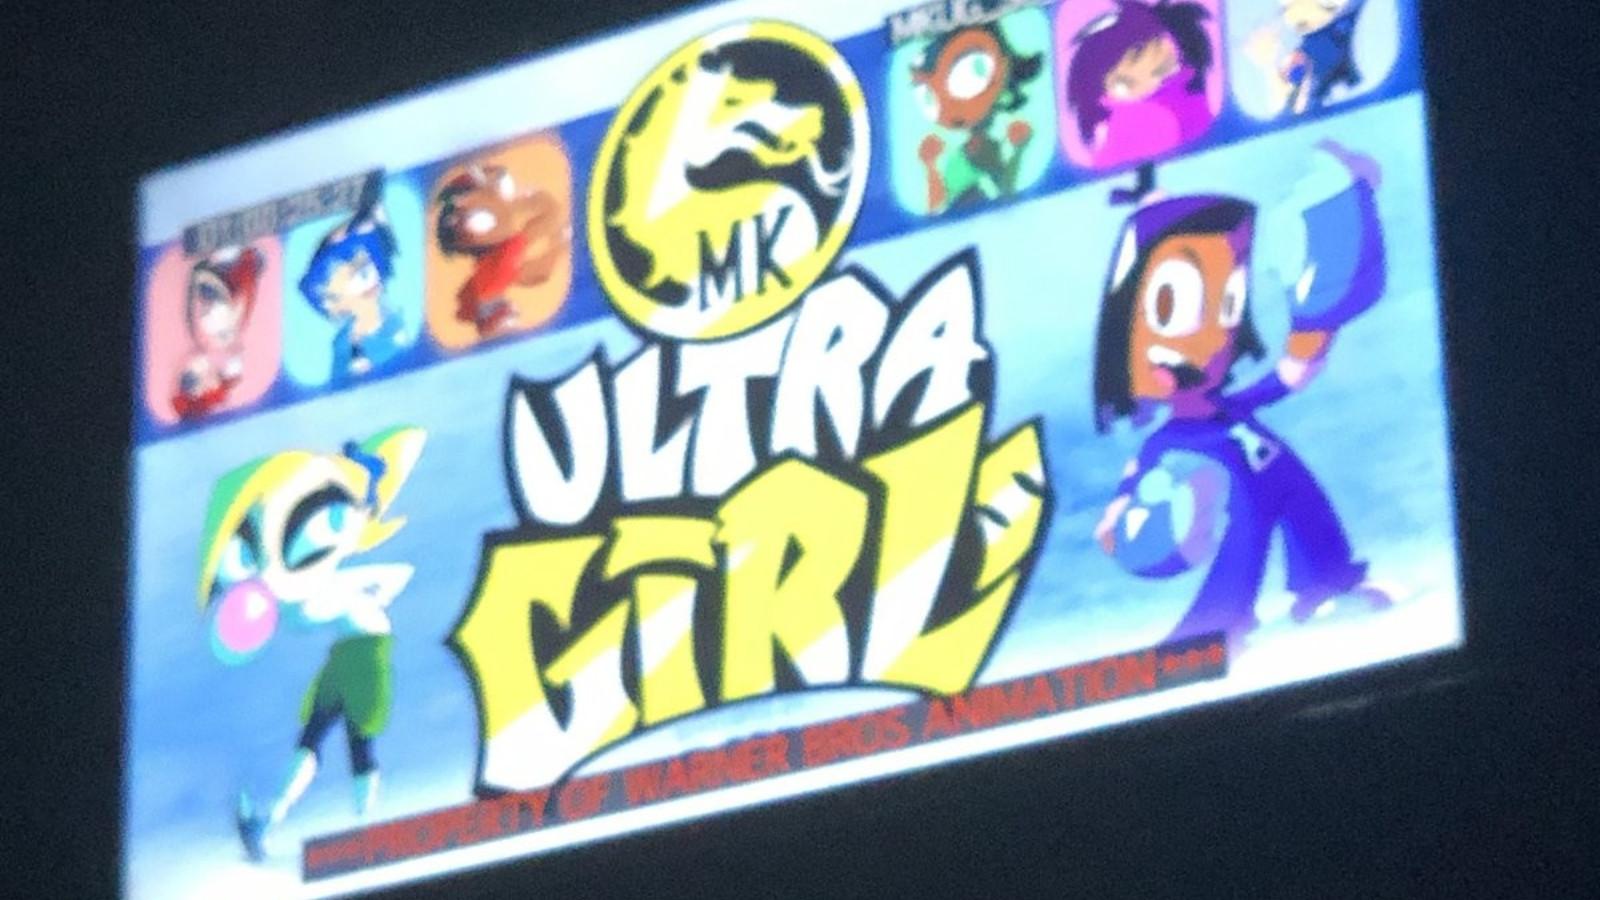 MK Ultra girls